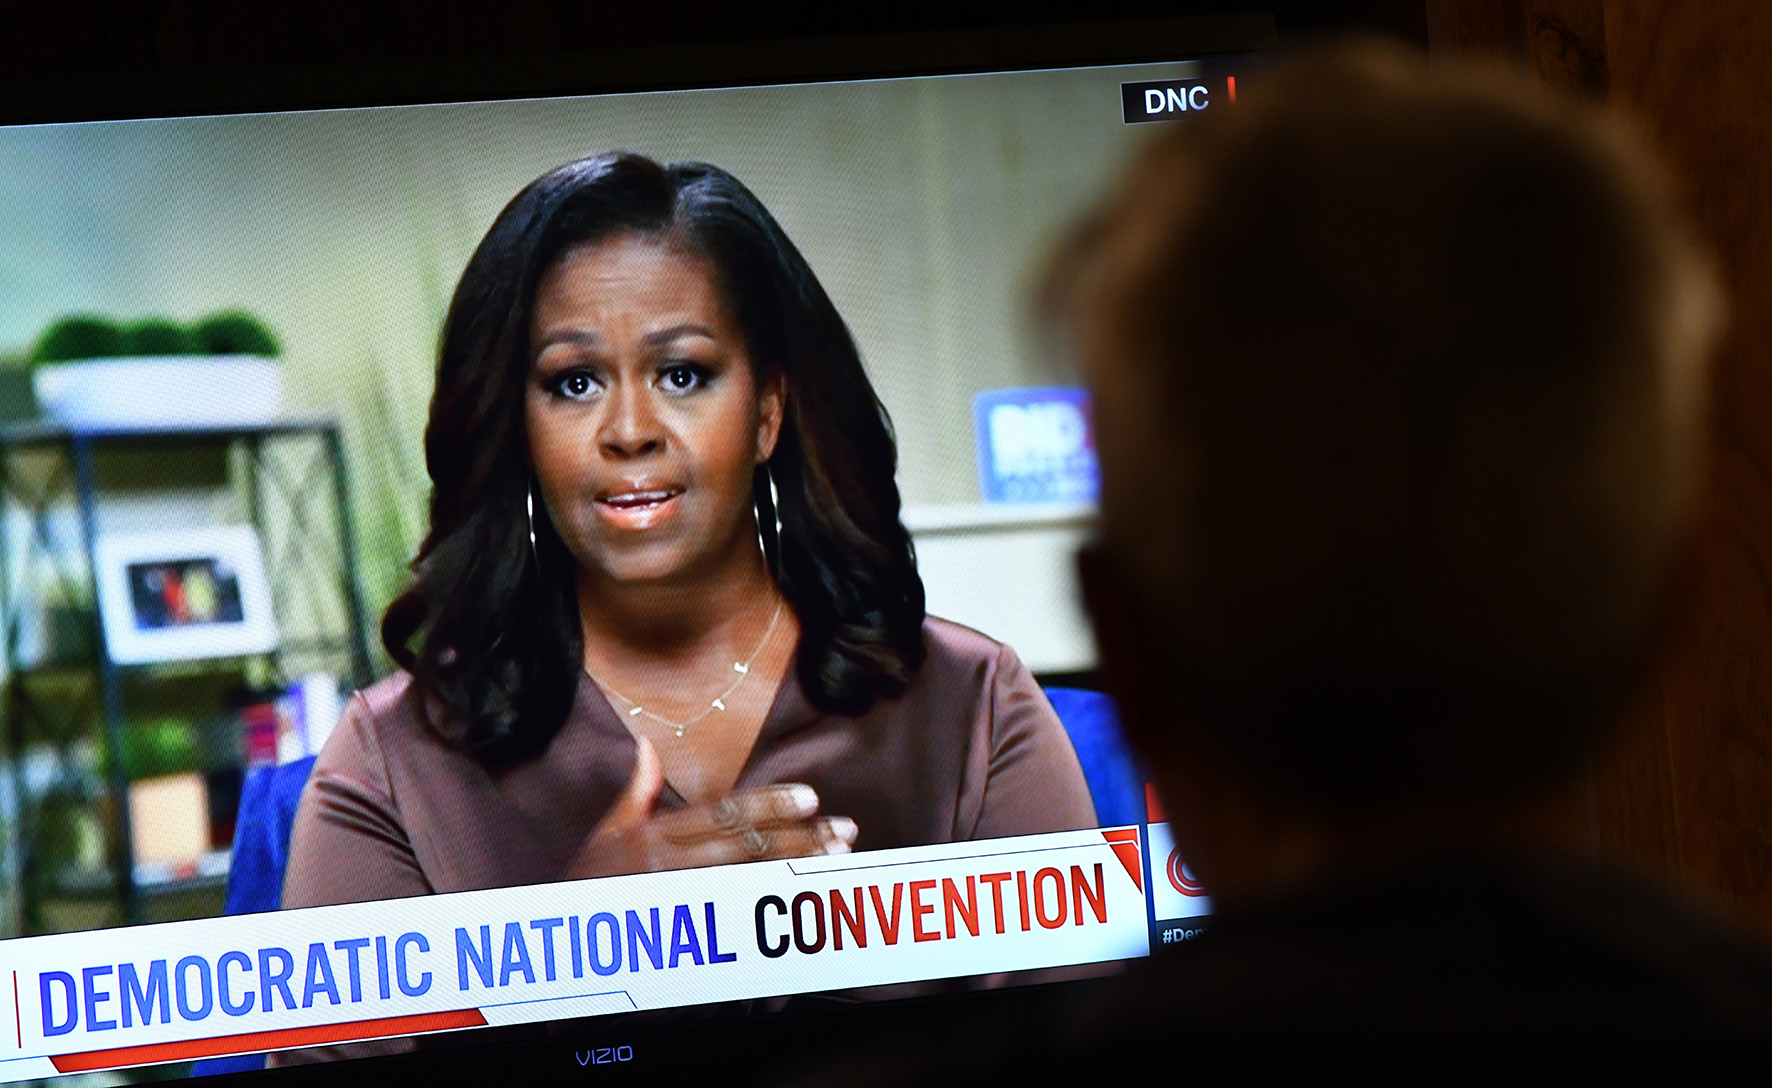 Op deze foto zie je Michelle Obama op TV tijdens de m the online broadcast of the Democratic National Convention.